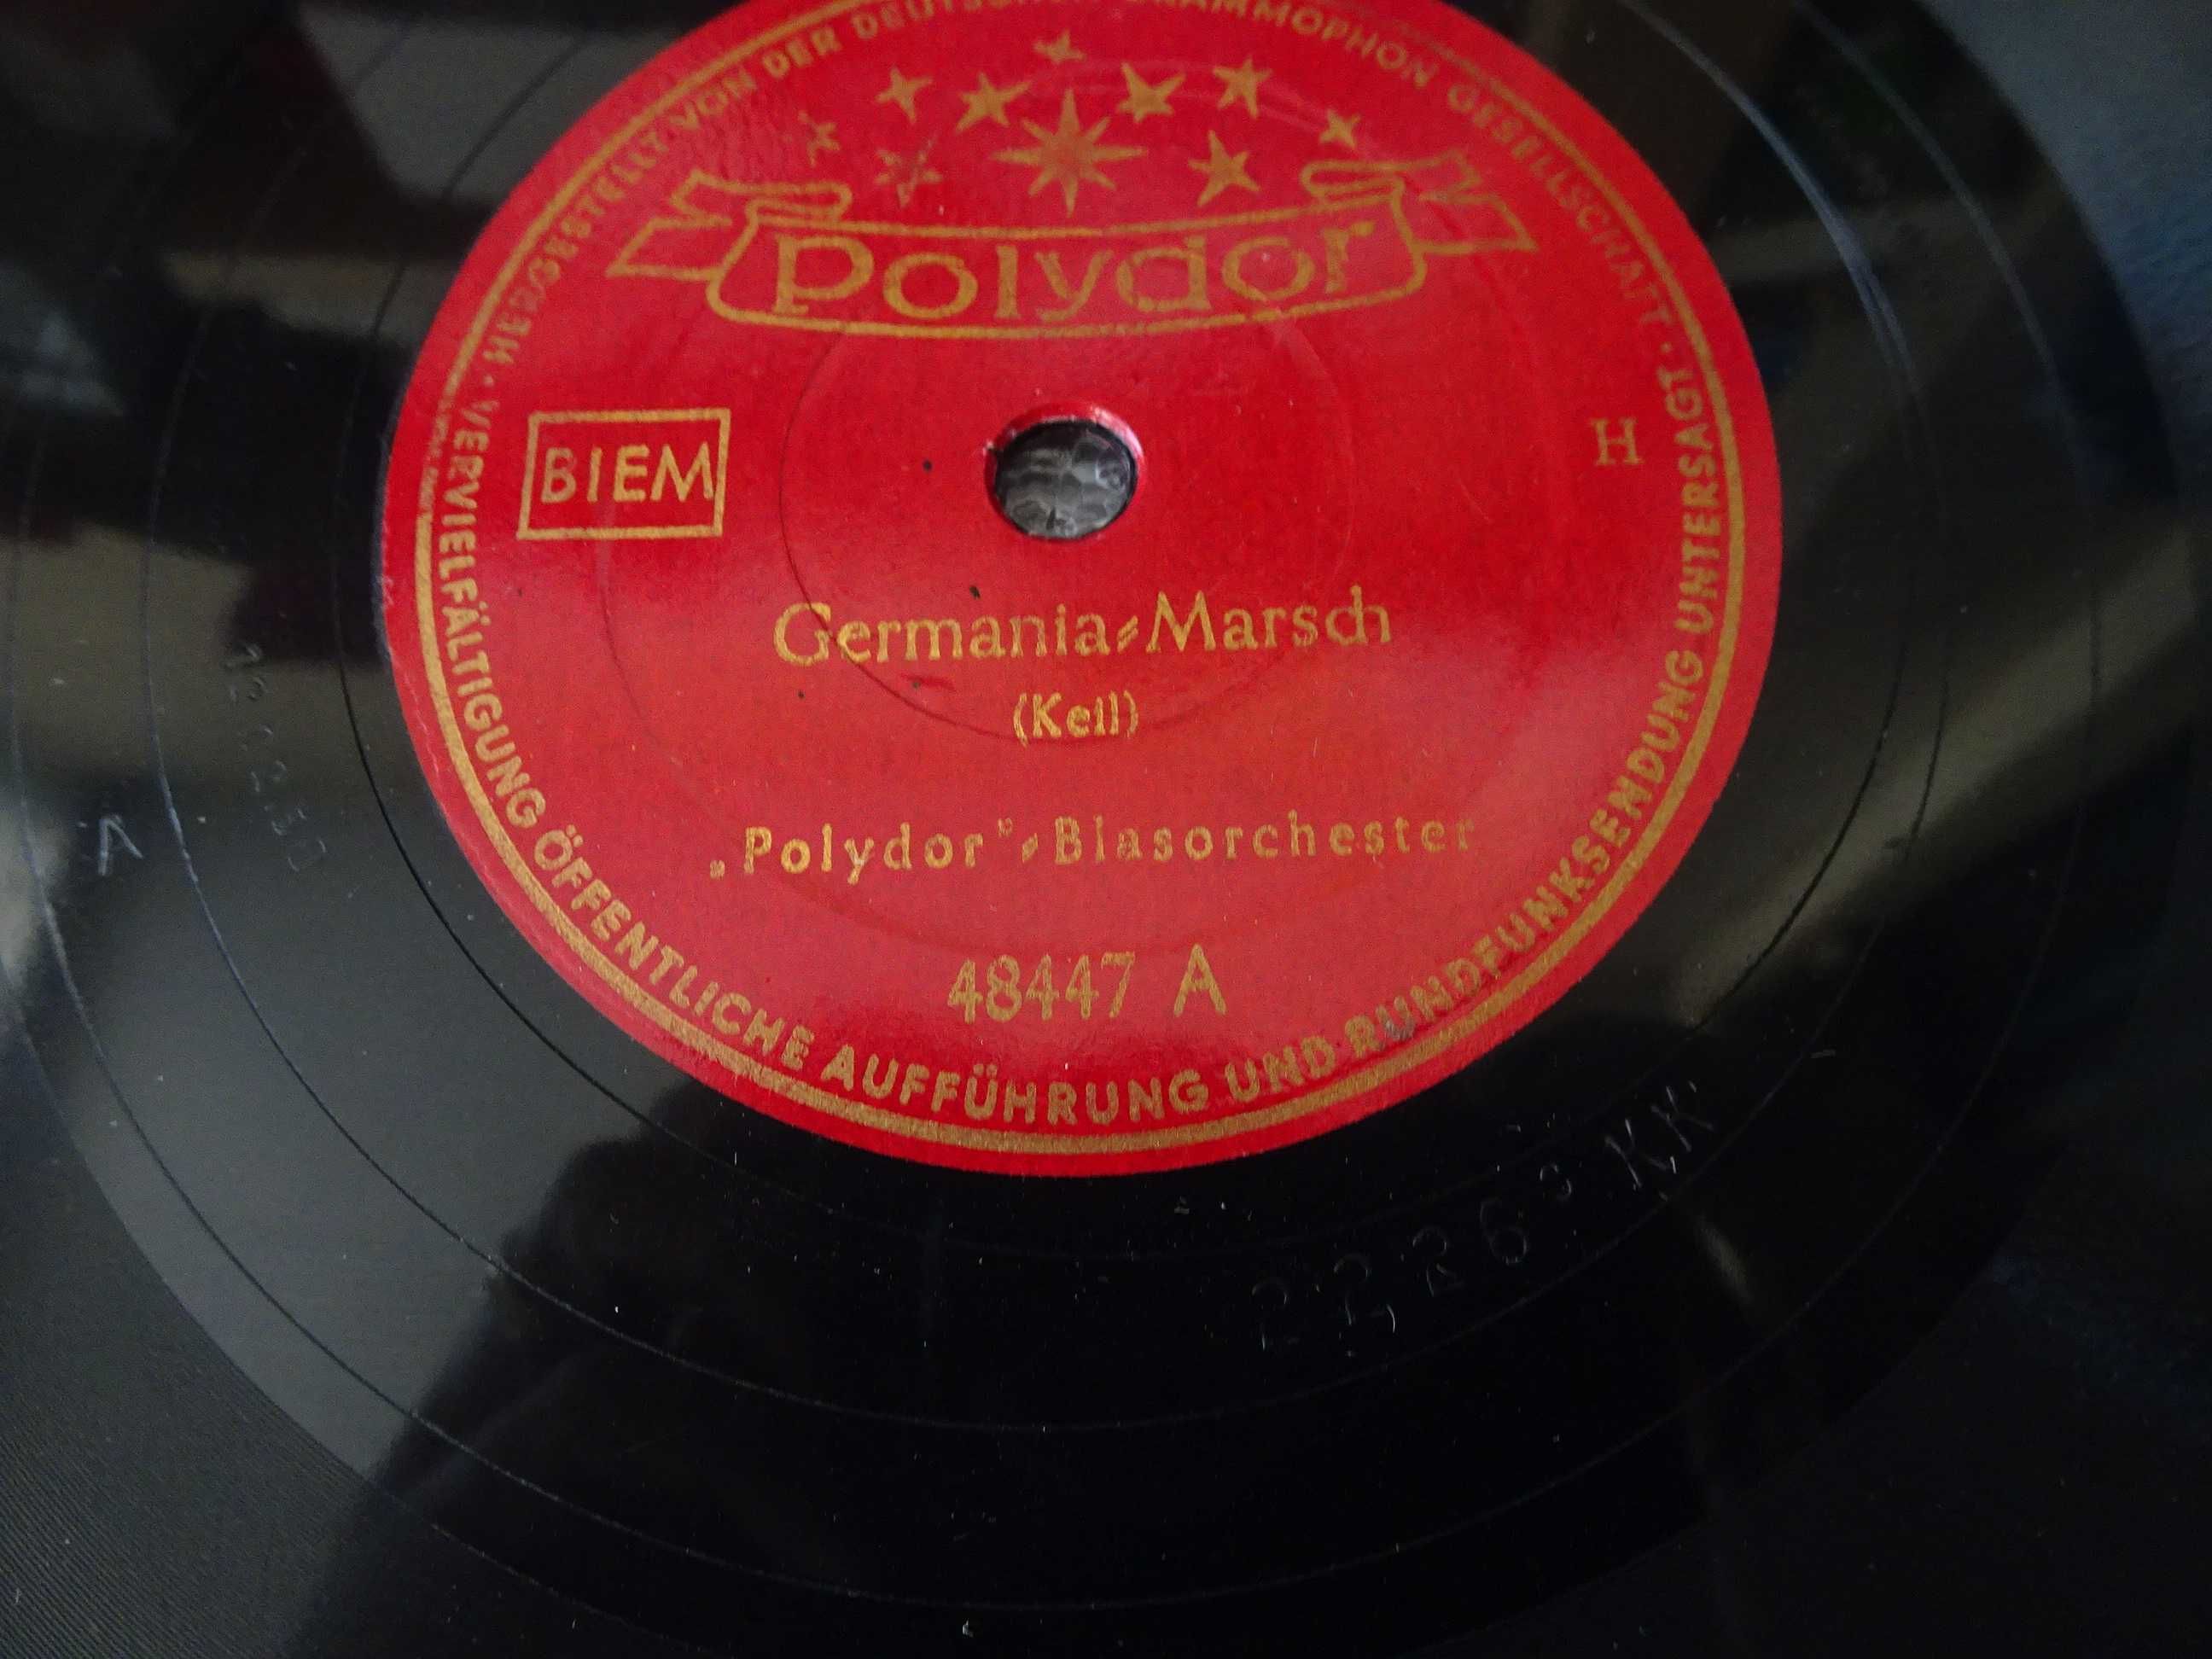 Disco grafonola Polydor Blasorchester - Germania Marsch / Venezia